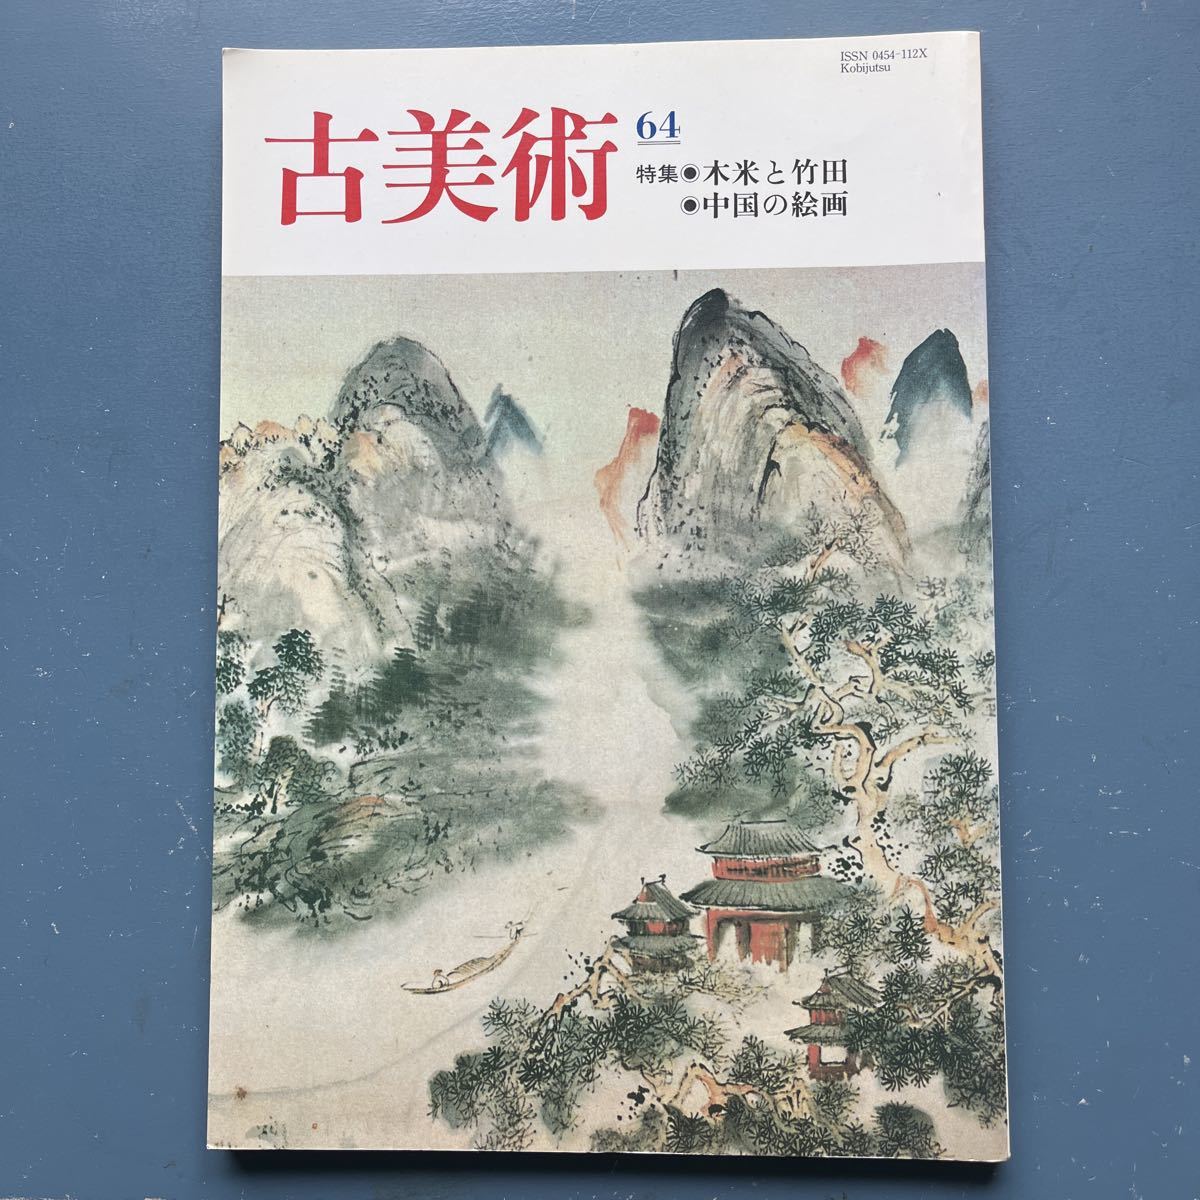 प्राचीन कला 64 विशेष फ़ीचर: लकड़ी के चावल और टेकेडा चीनी पेंटिंग, पत्रिका, कला, मनोरंजन, सामान्य कला